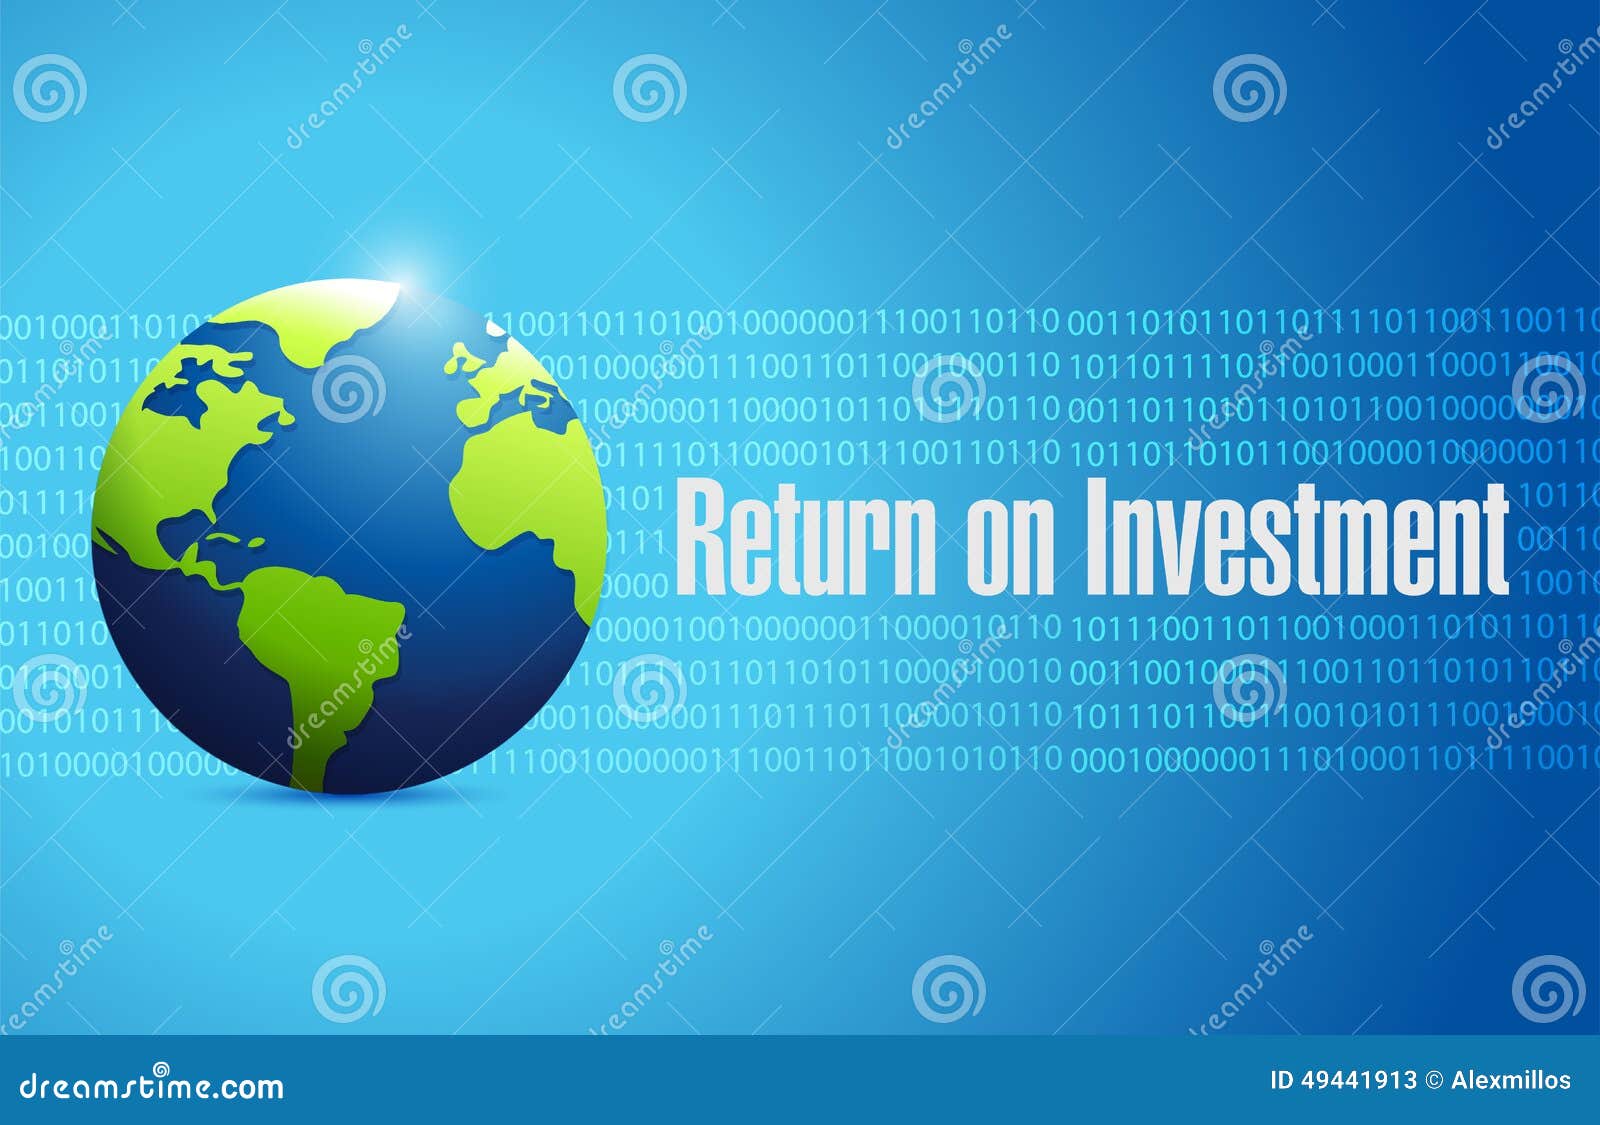 return on investment globe  